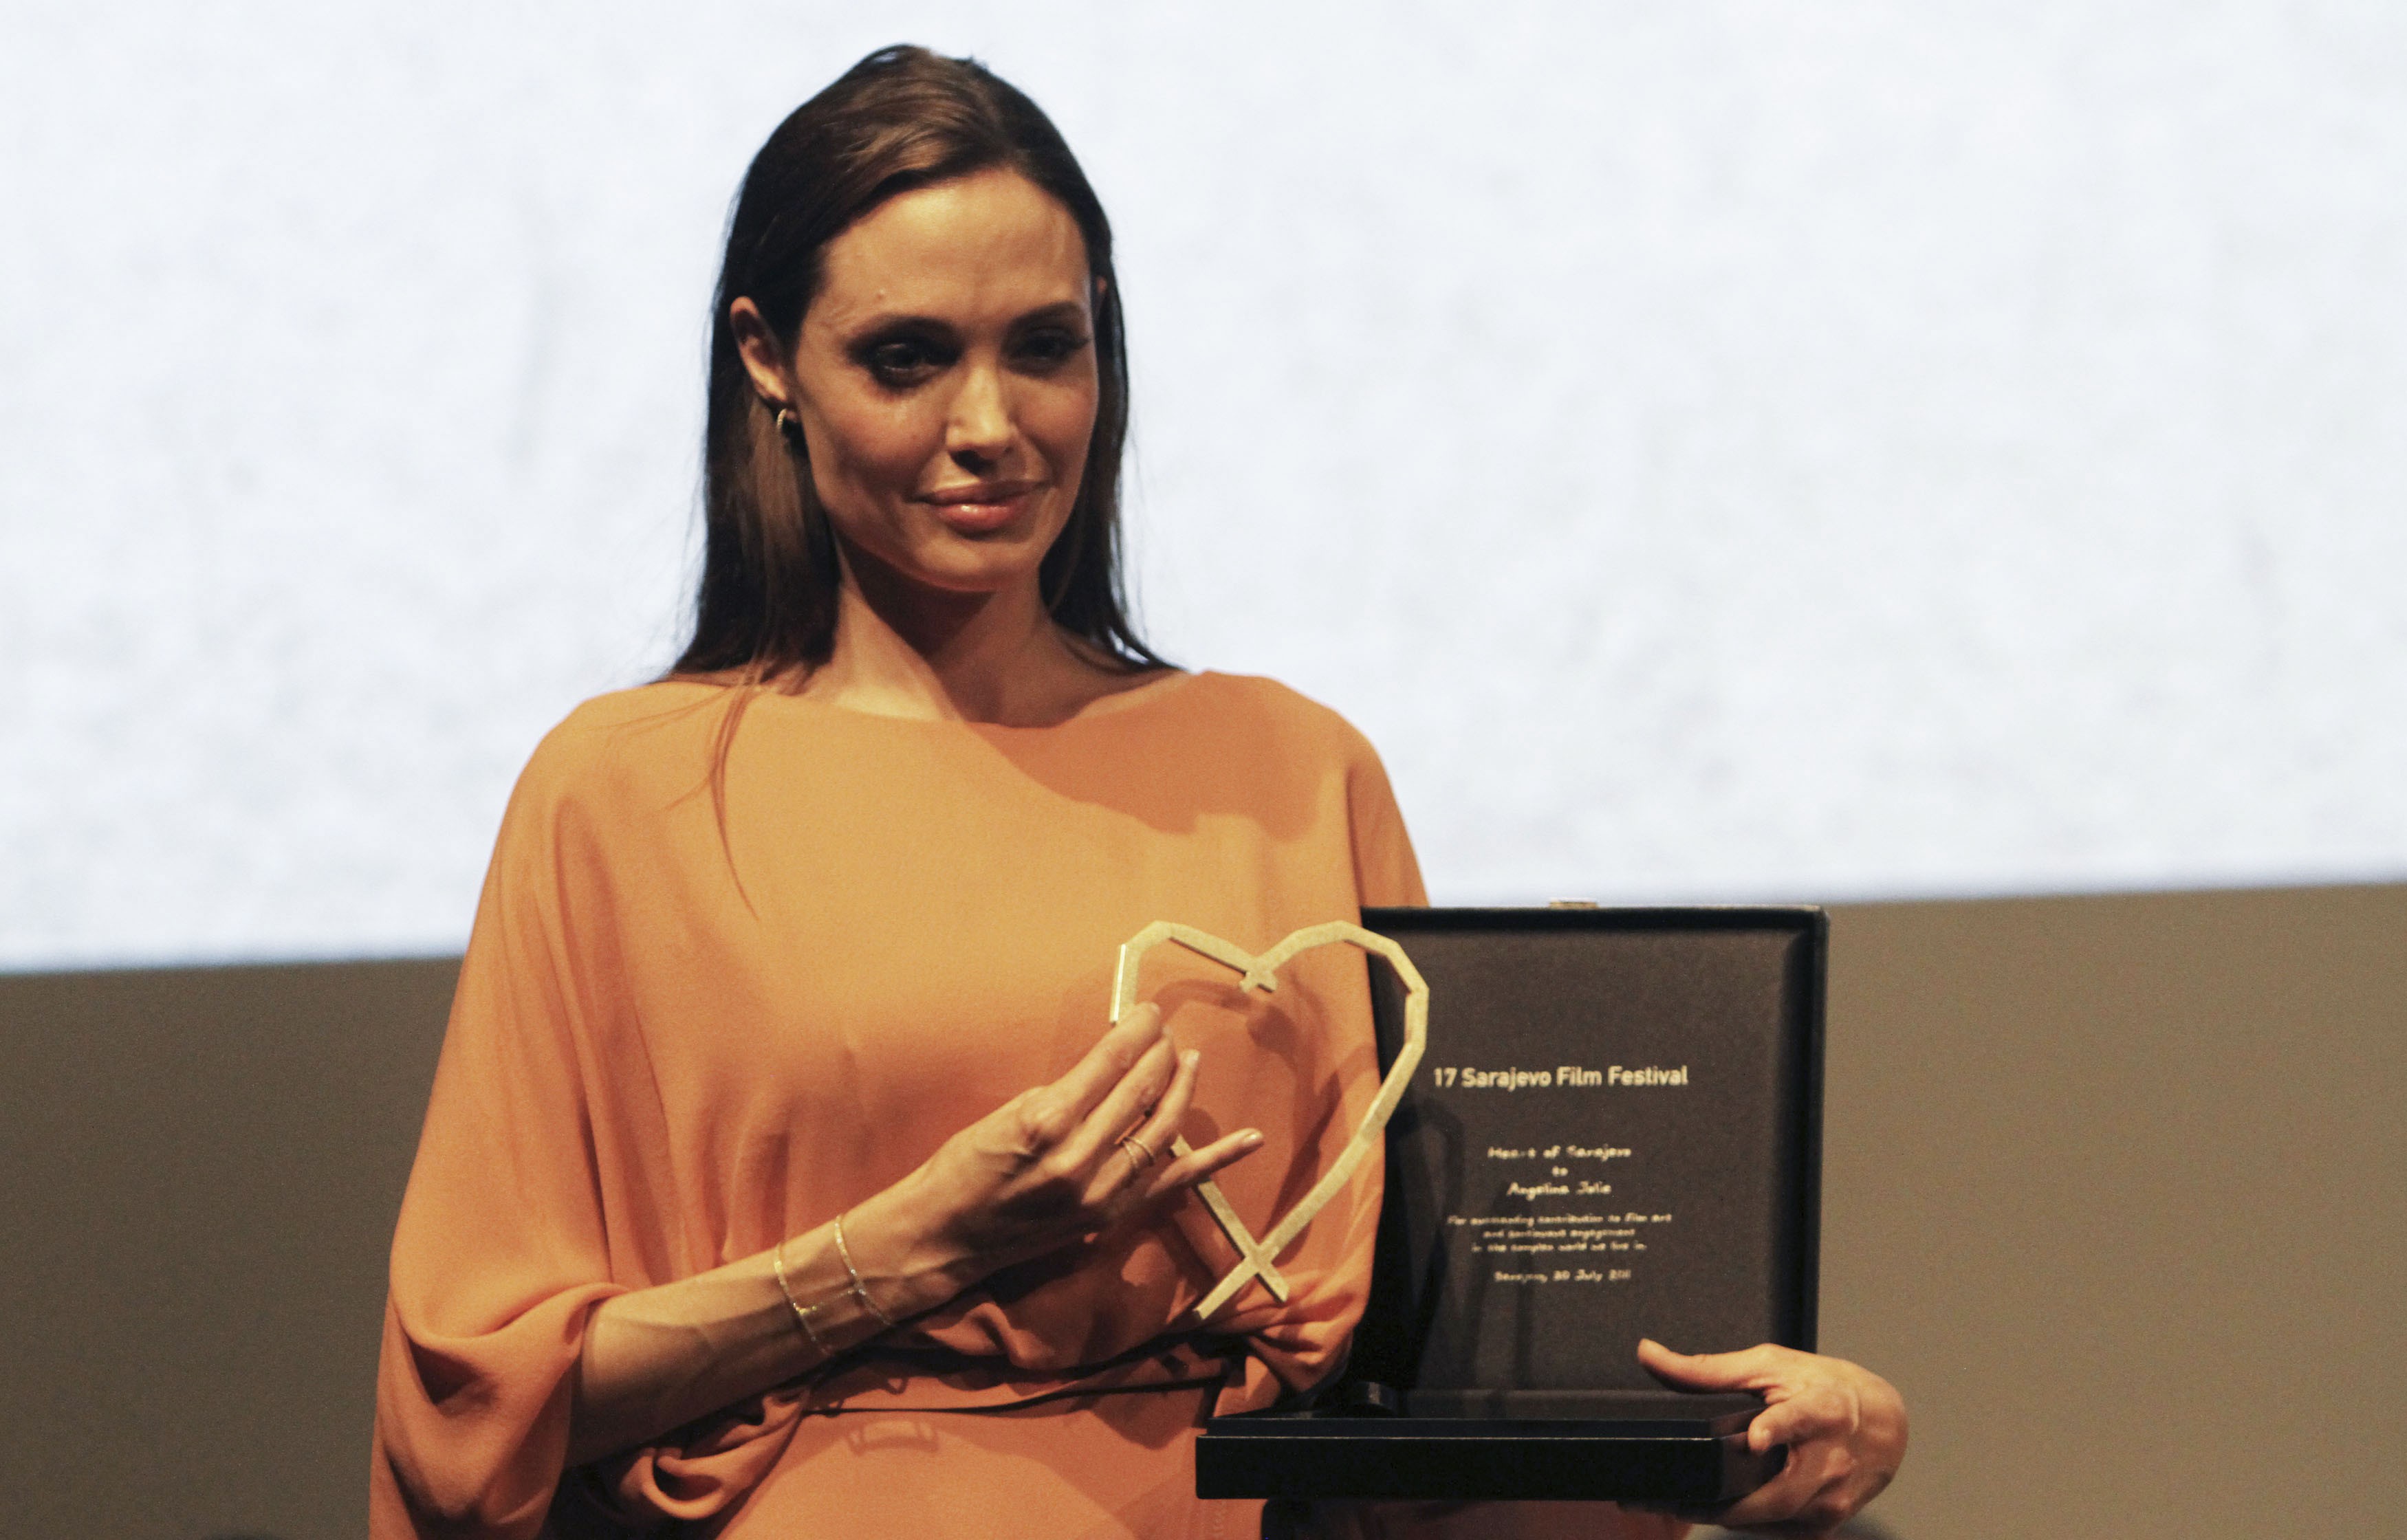 H Αντζελίνα Τζολί βραβεύτηκε για το σκηνοθετικό της ντεμπούτο